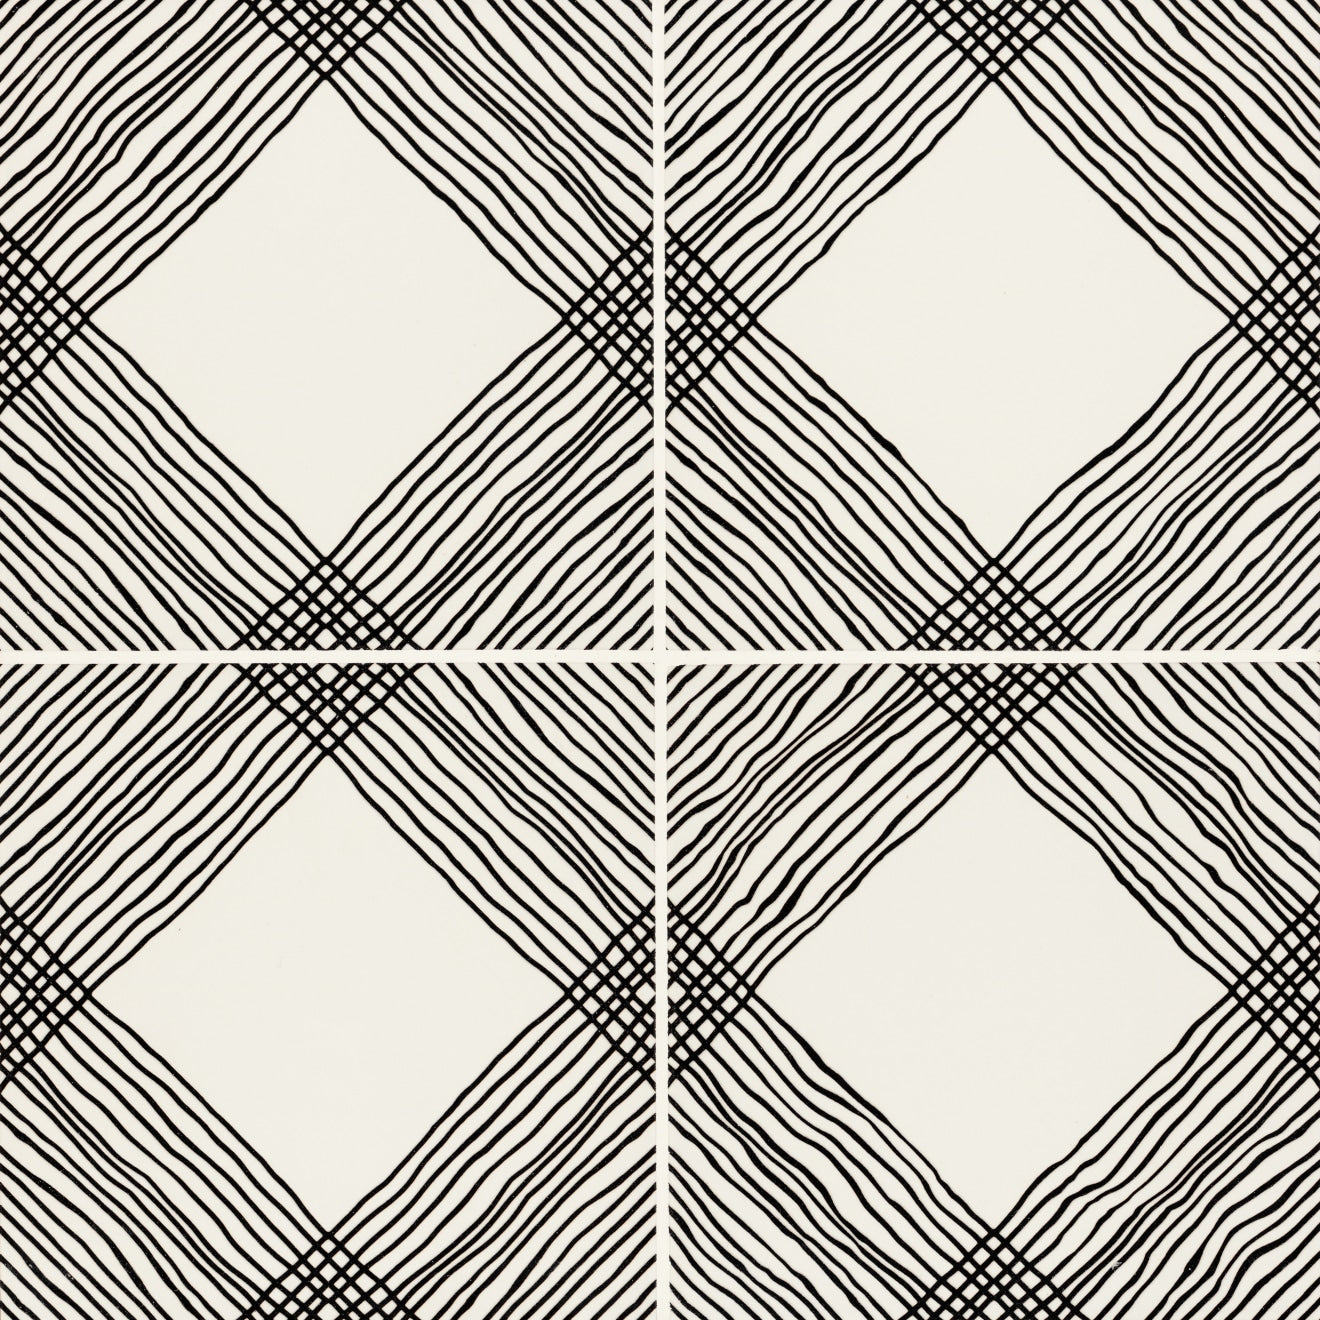 Rothko Glazed Ceramic Decorative Field Tile 9X9 Linear Squares Matte